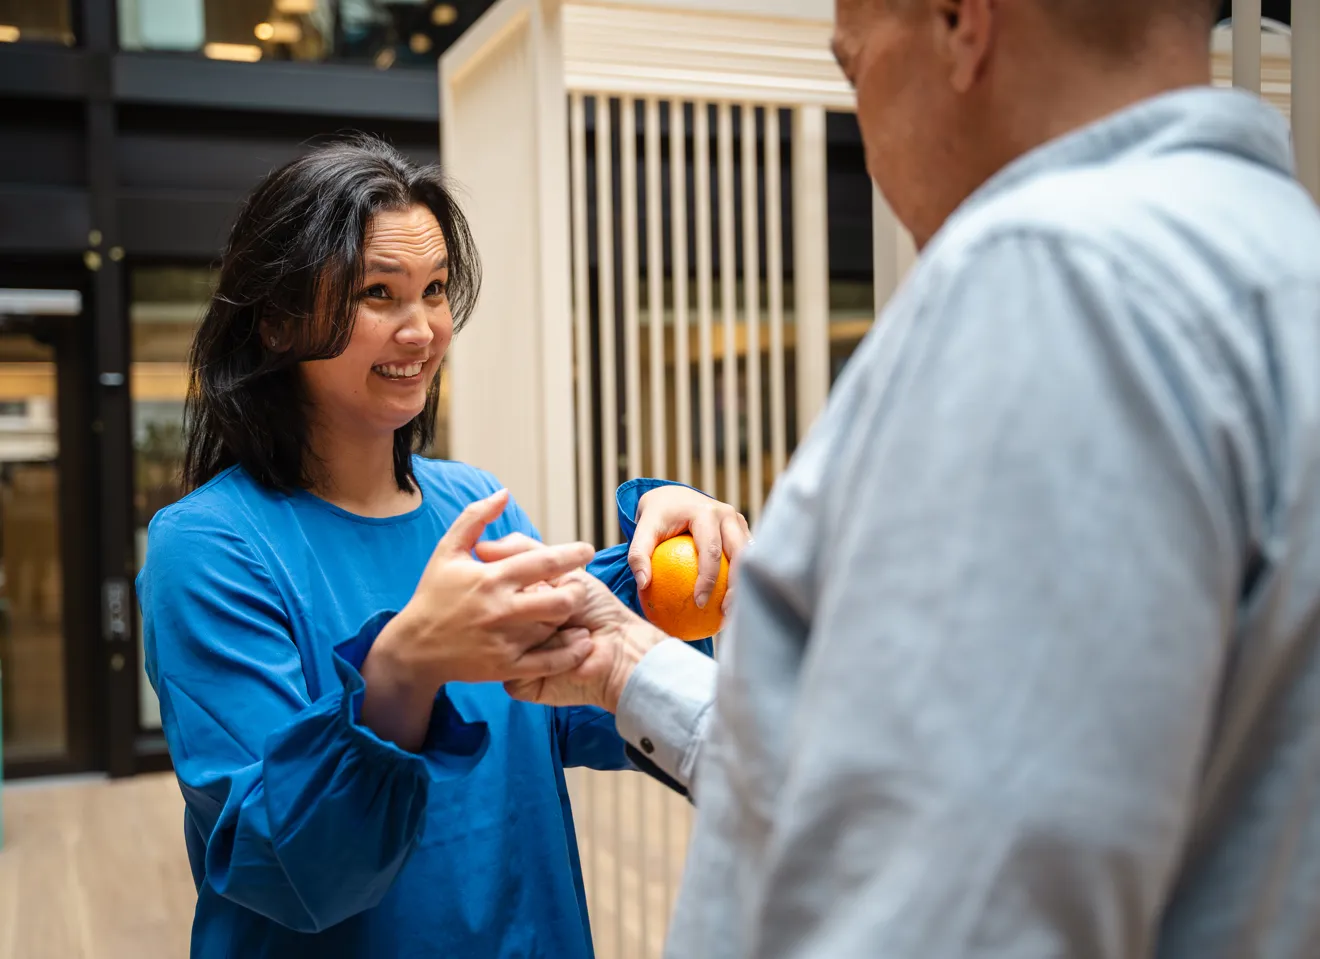 Kvinne som holder en appelsin i en hånd, og håndhilser på en annen person på en merkelig måte med den andre hånda